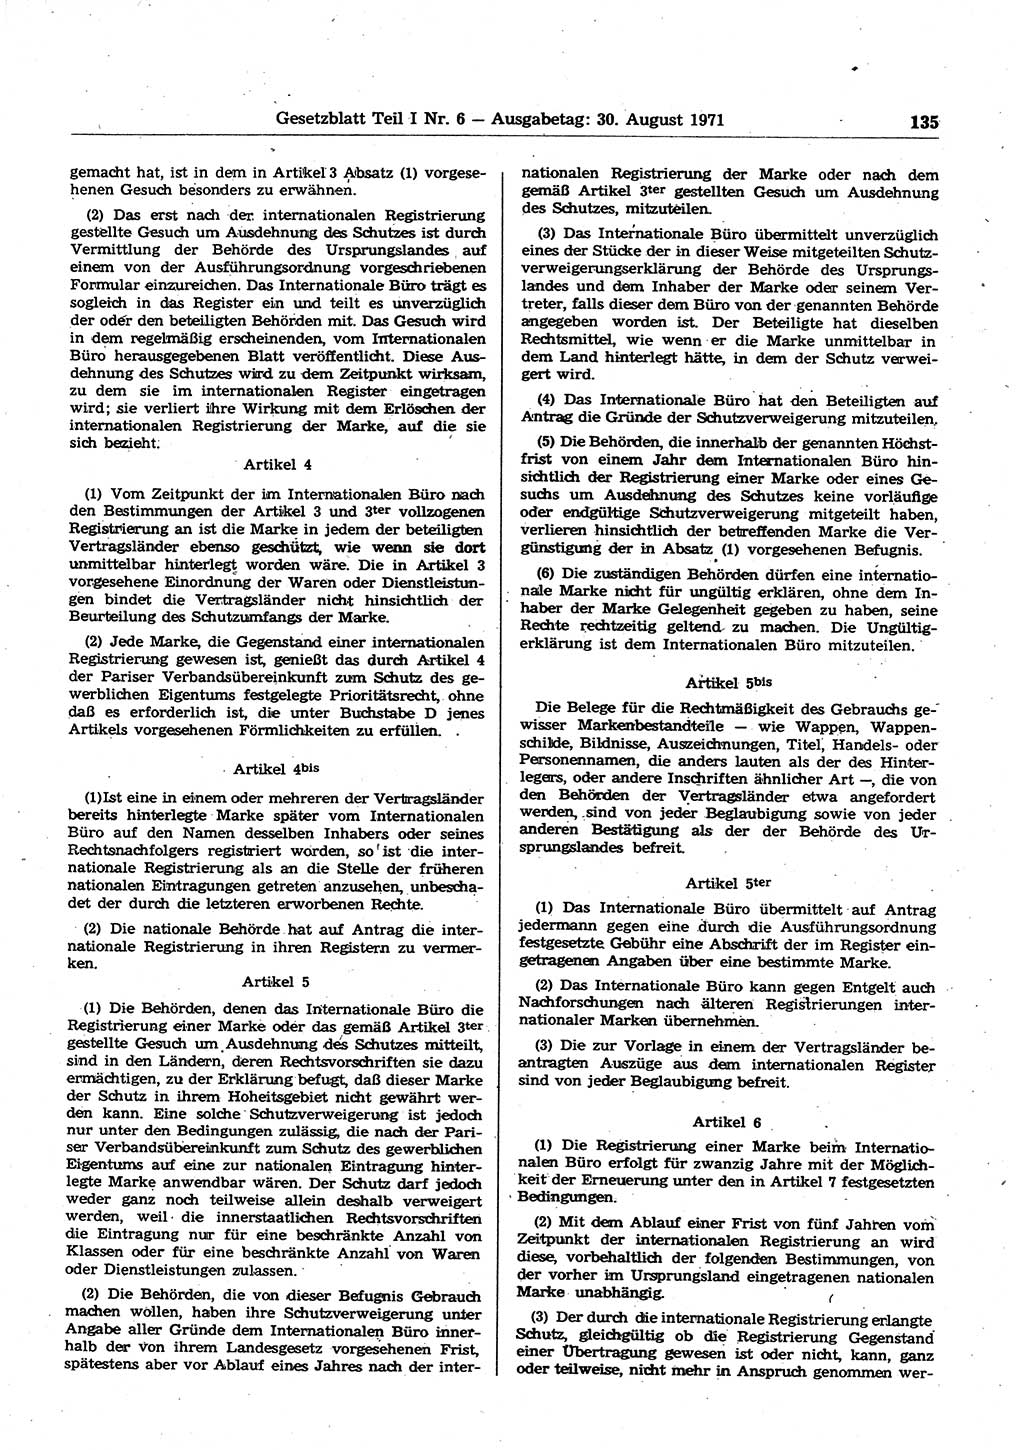 Gesetzblatt (GBl.) der Deutschen Demokratischen Republik (DDR) Teil Ⅰ 1971, Seite 135 (GBl. DDR Ⅰ 1971, S. 135)